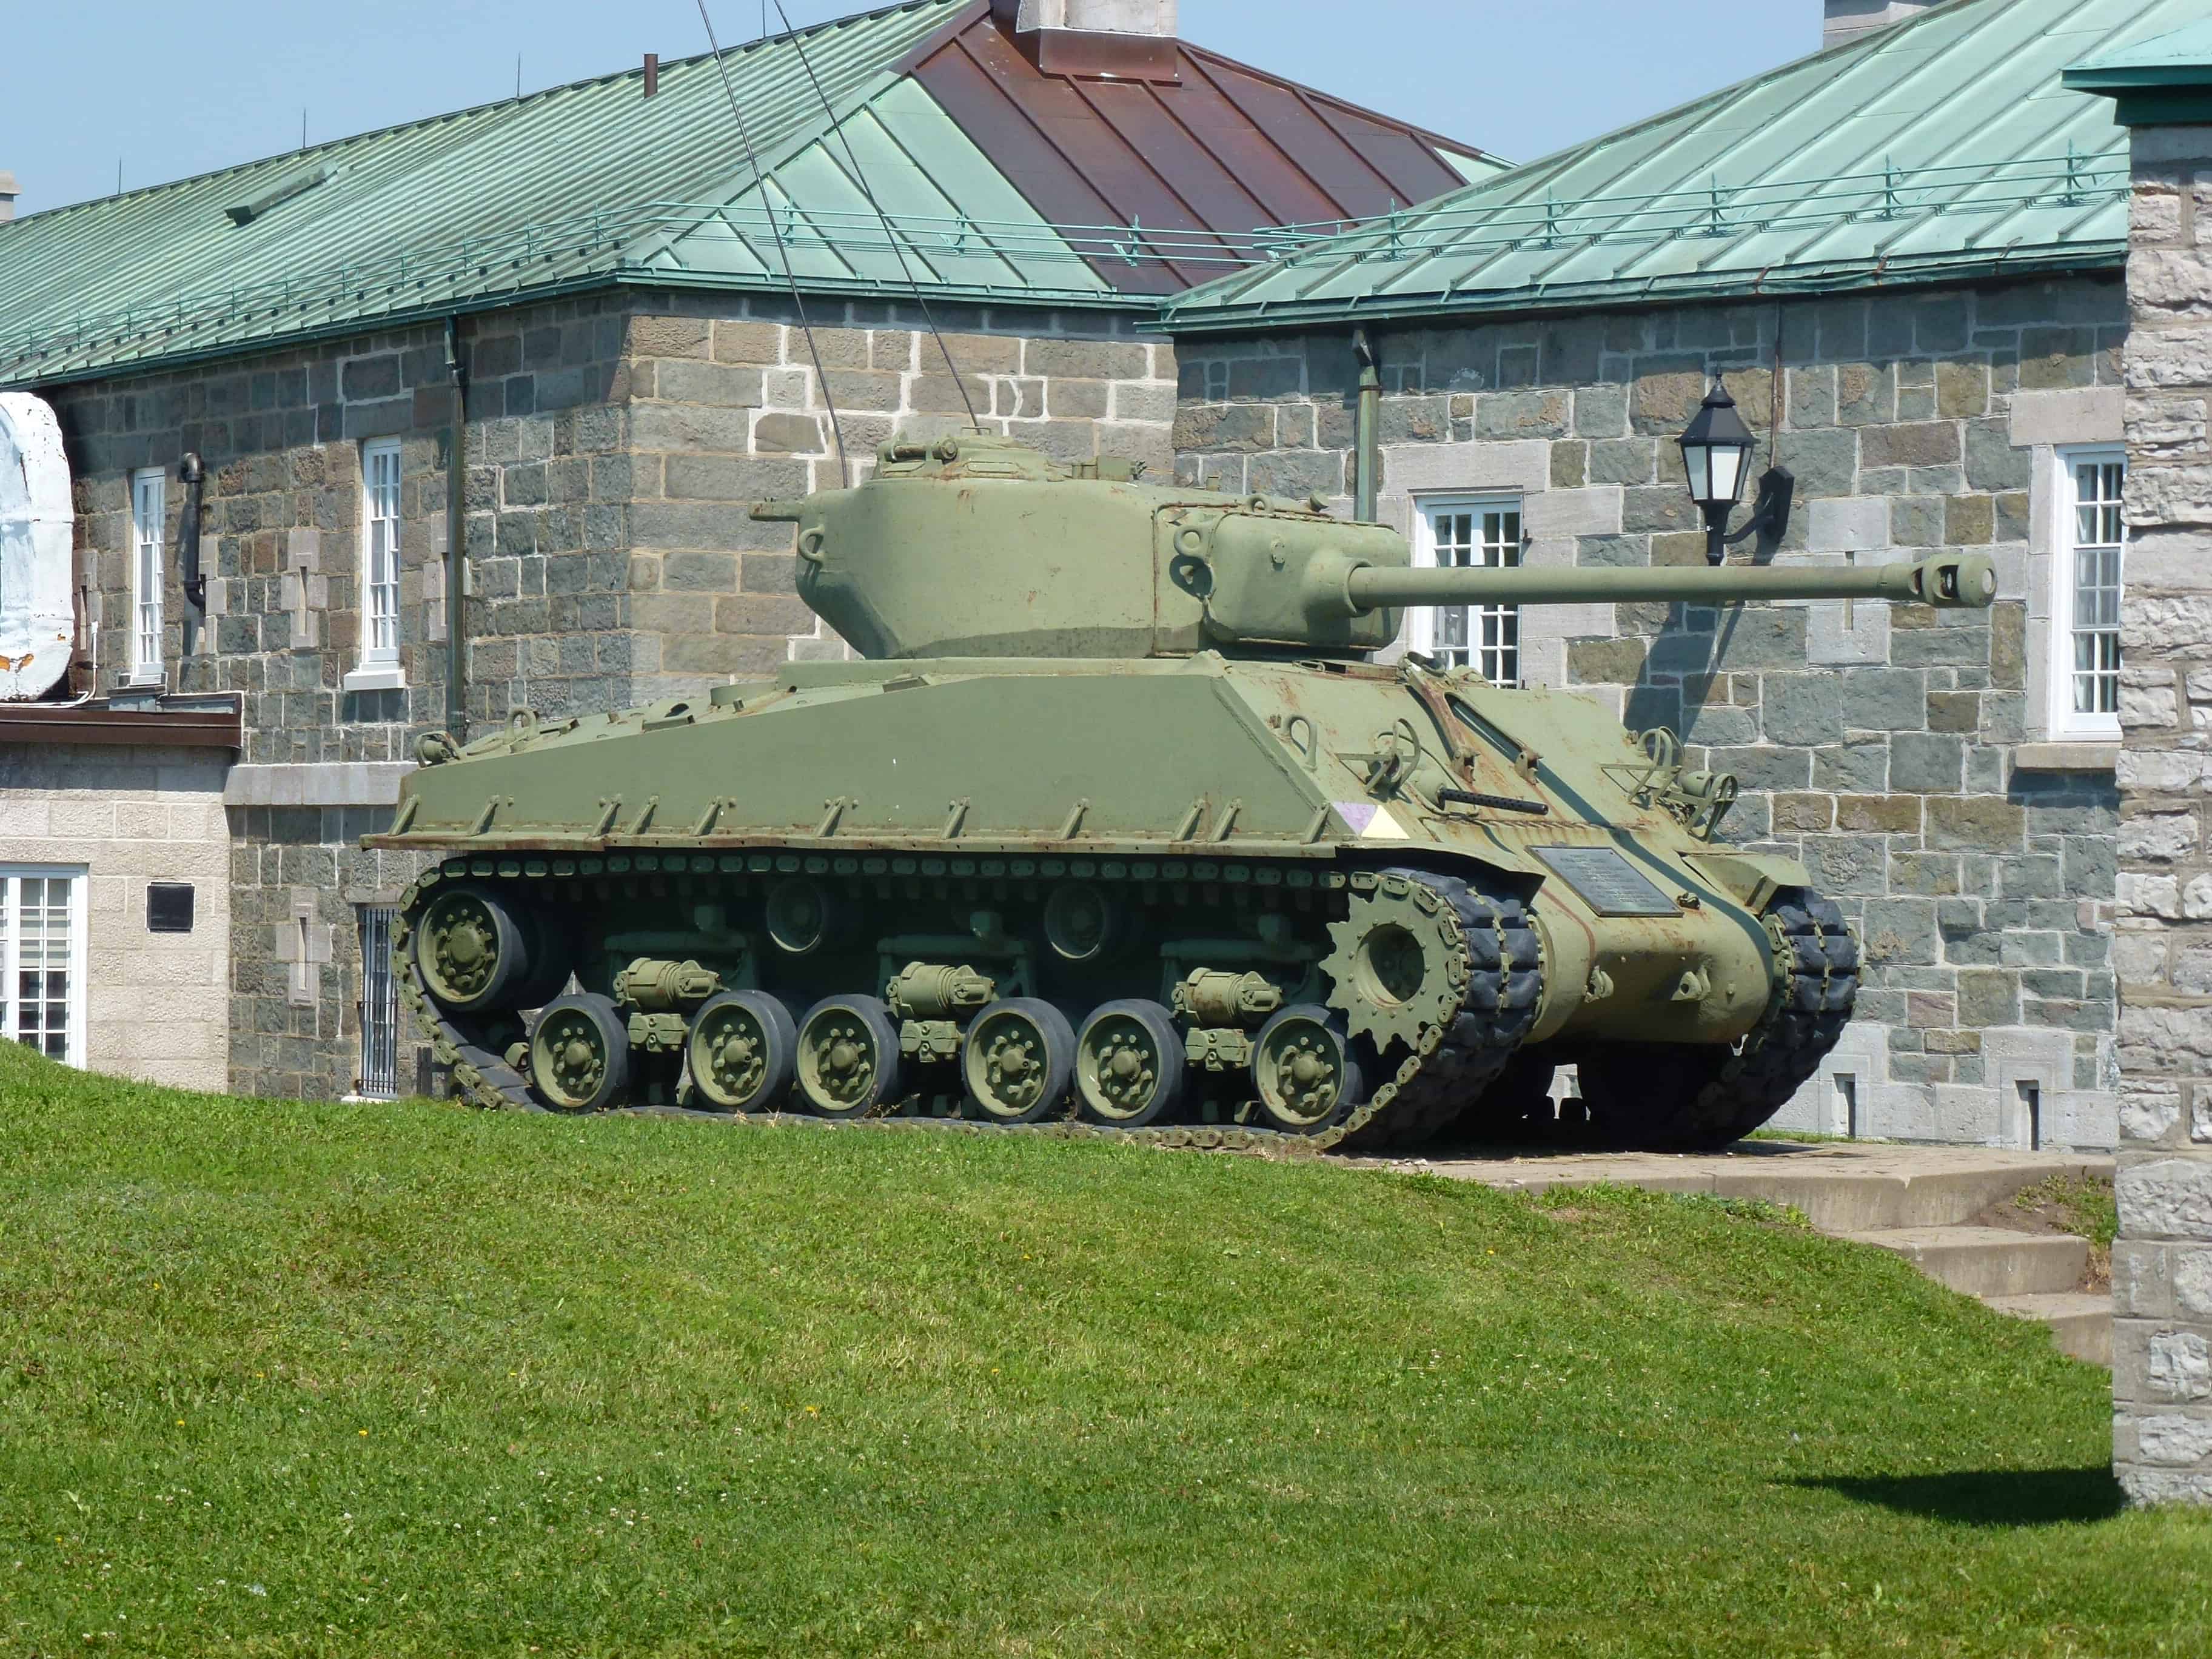 Sherman tank at La Citadelle de Québec, Canada